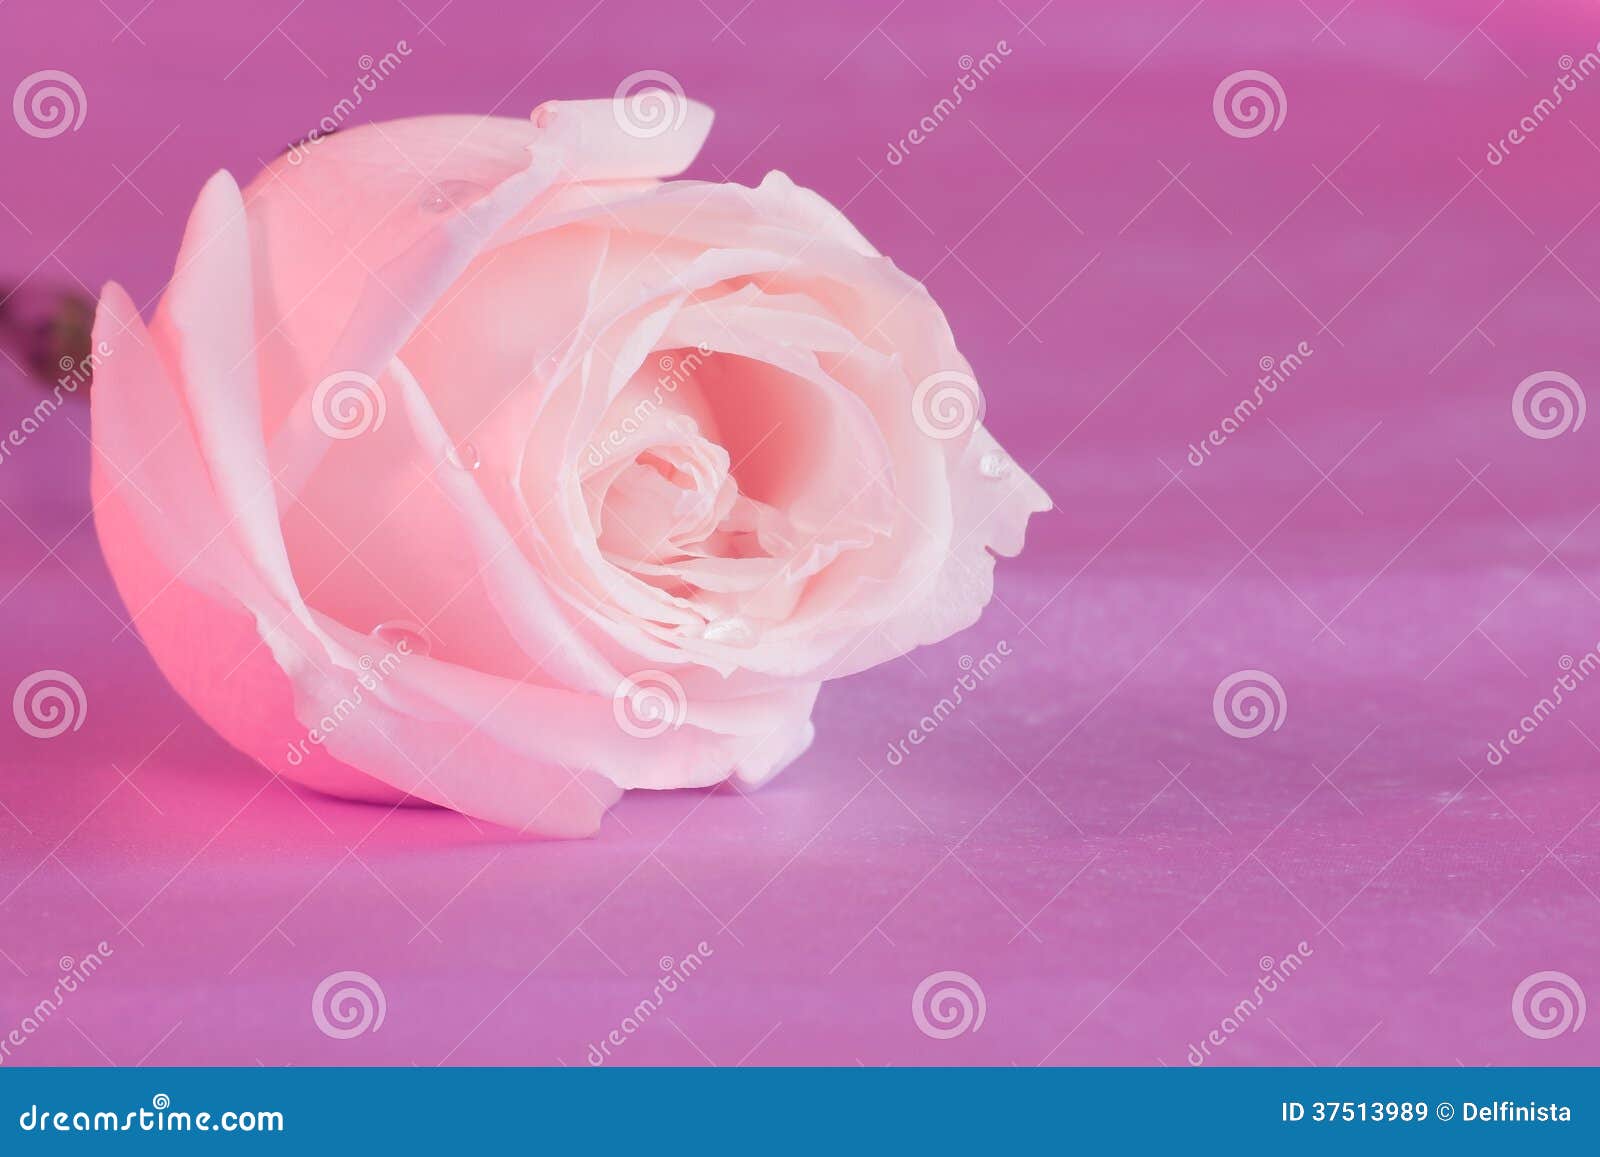 Rose Flower Desktop Wallpaper Rosa - Immagini Di Riserva Immagine Stock -  Immagine di immagine, immagini: 37513989